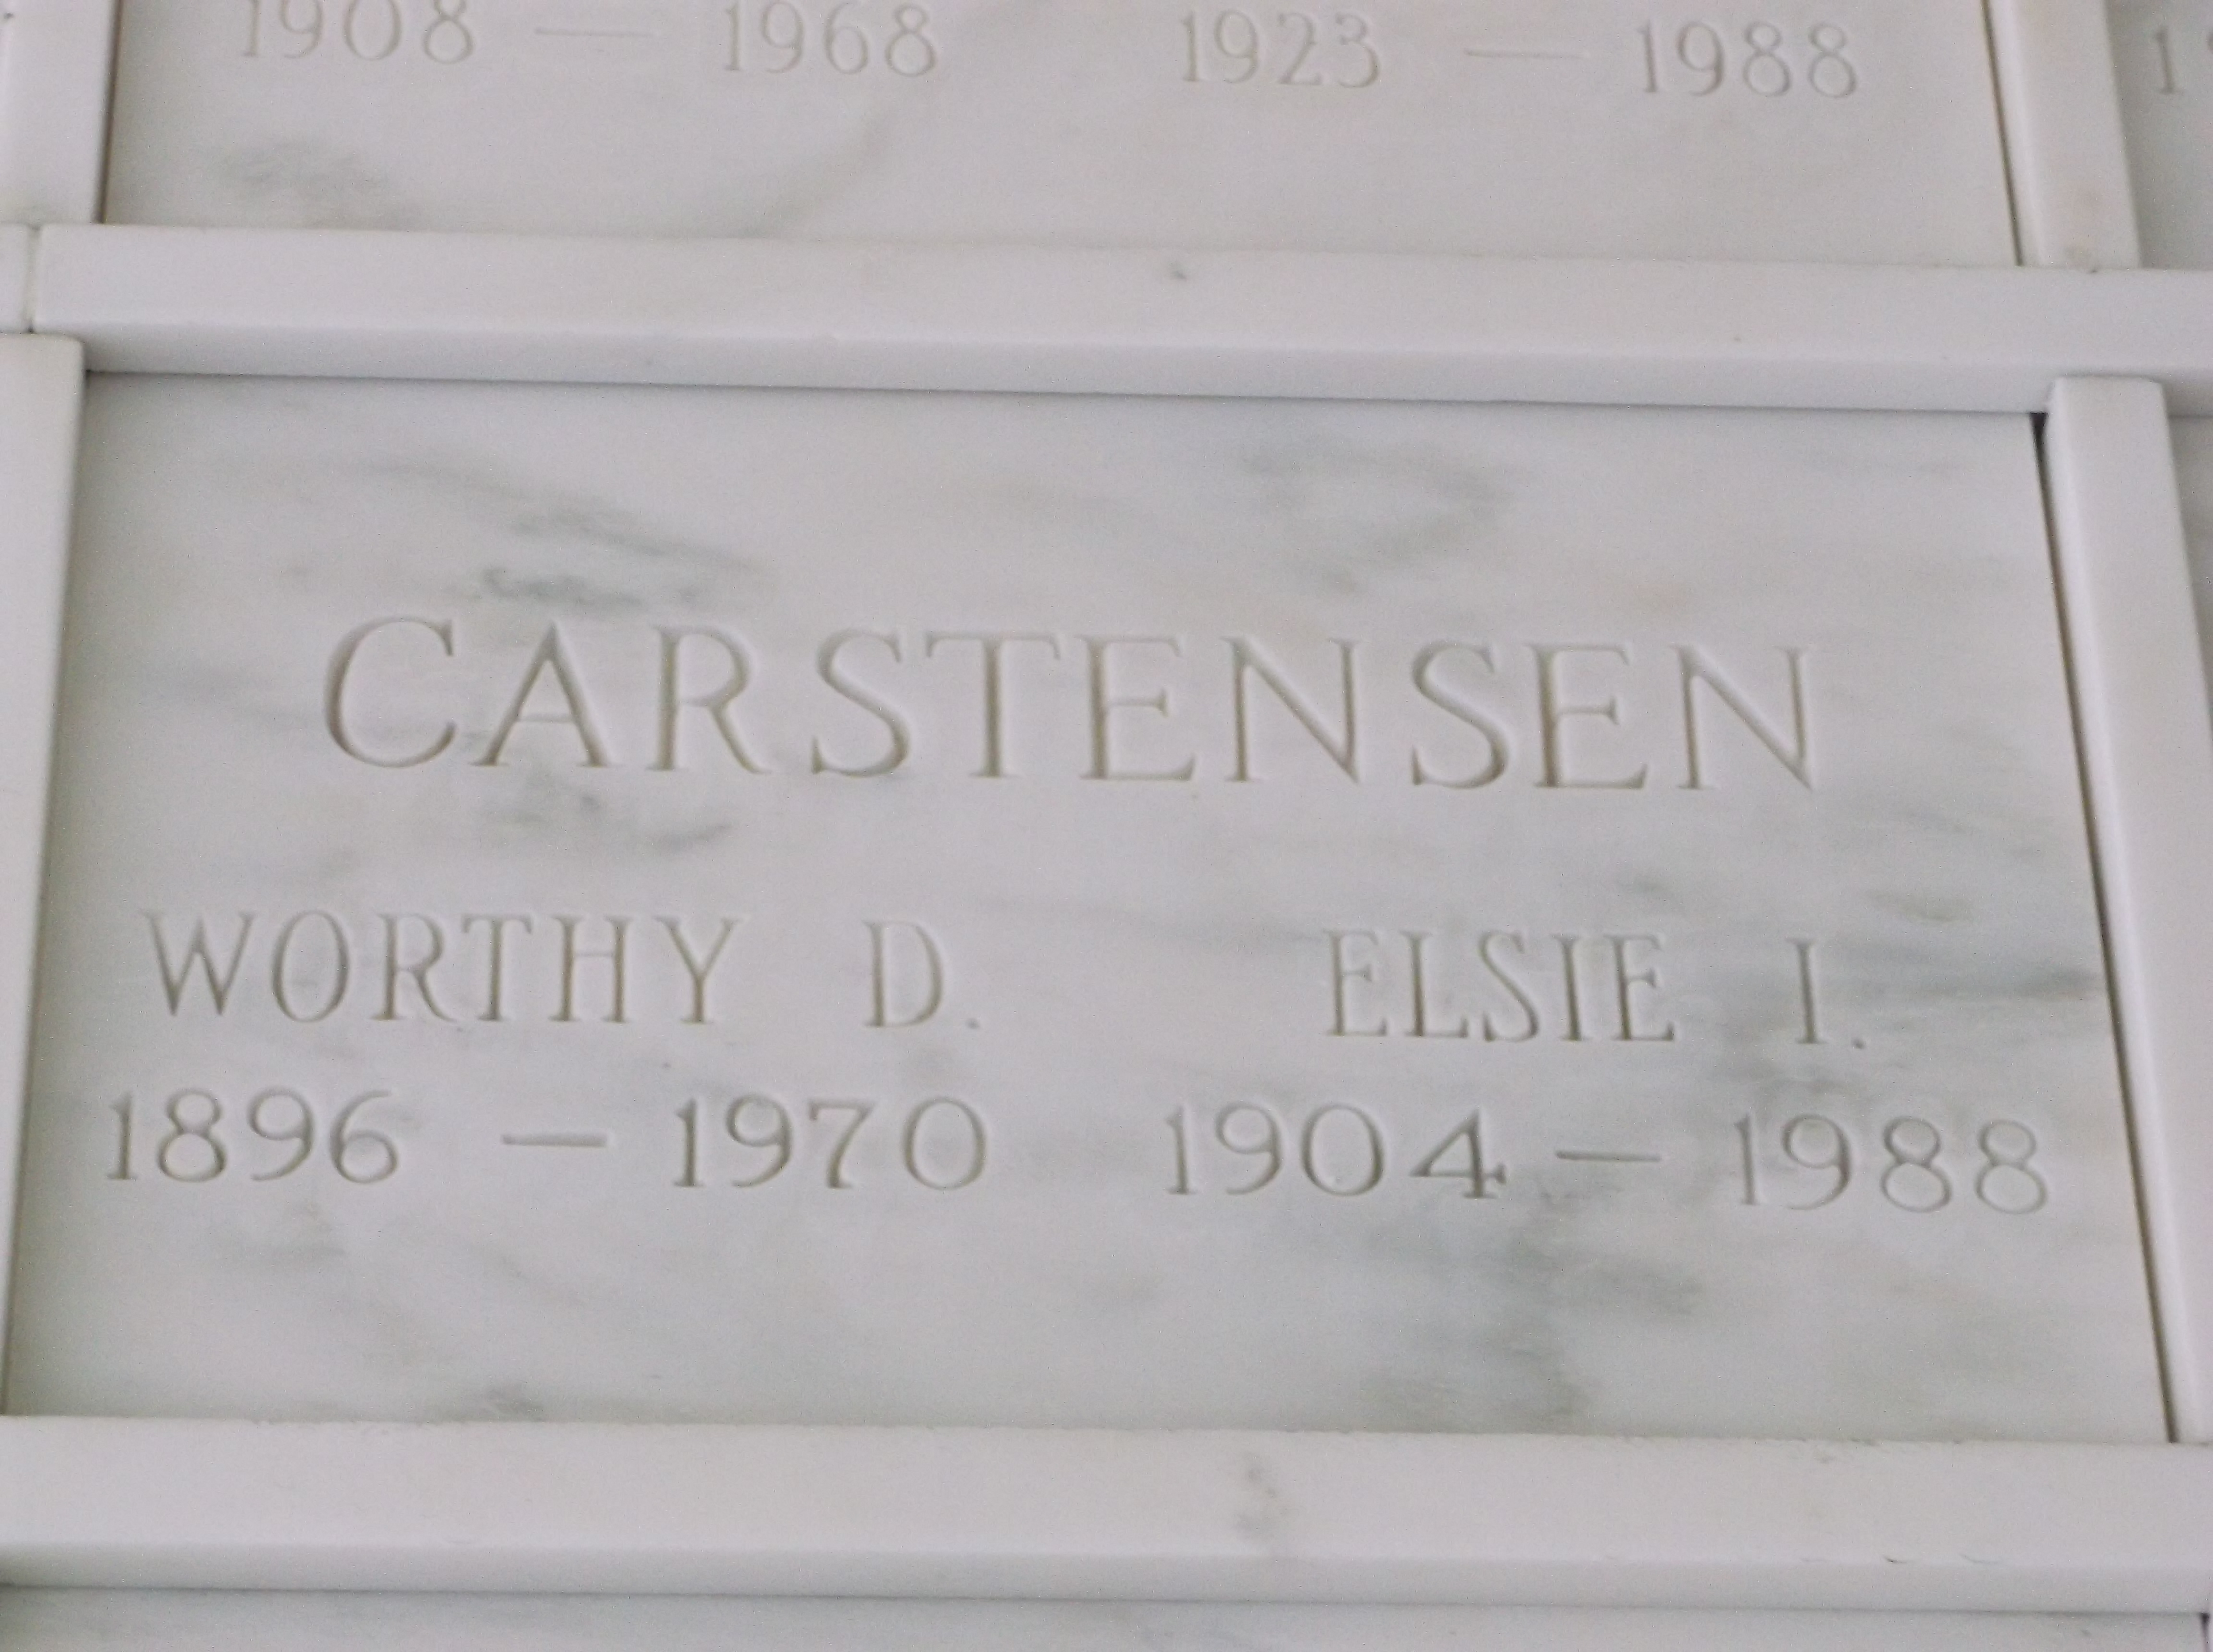 Worthy D Carstensen